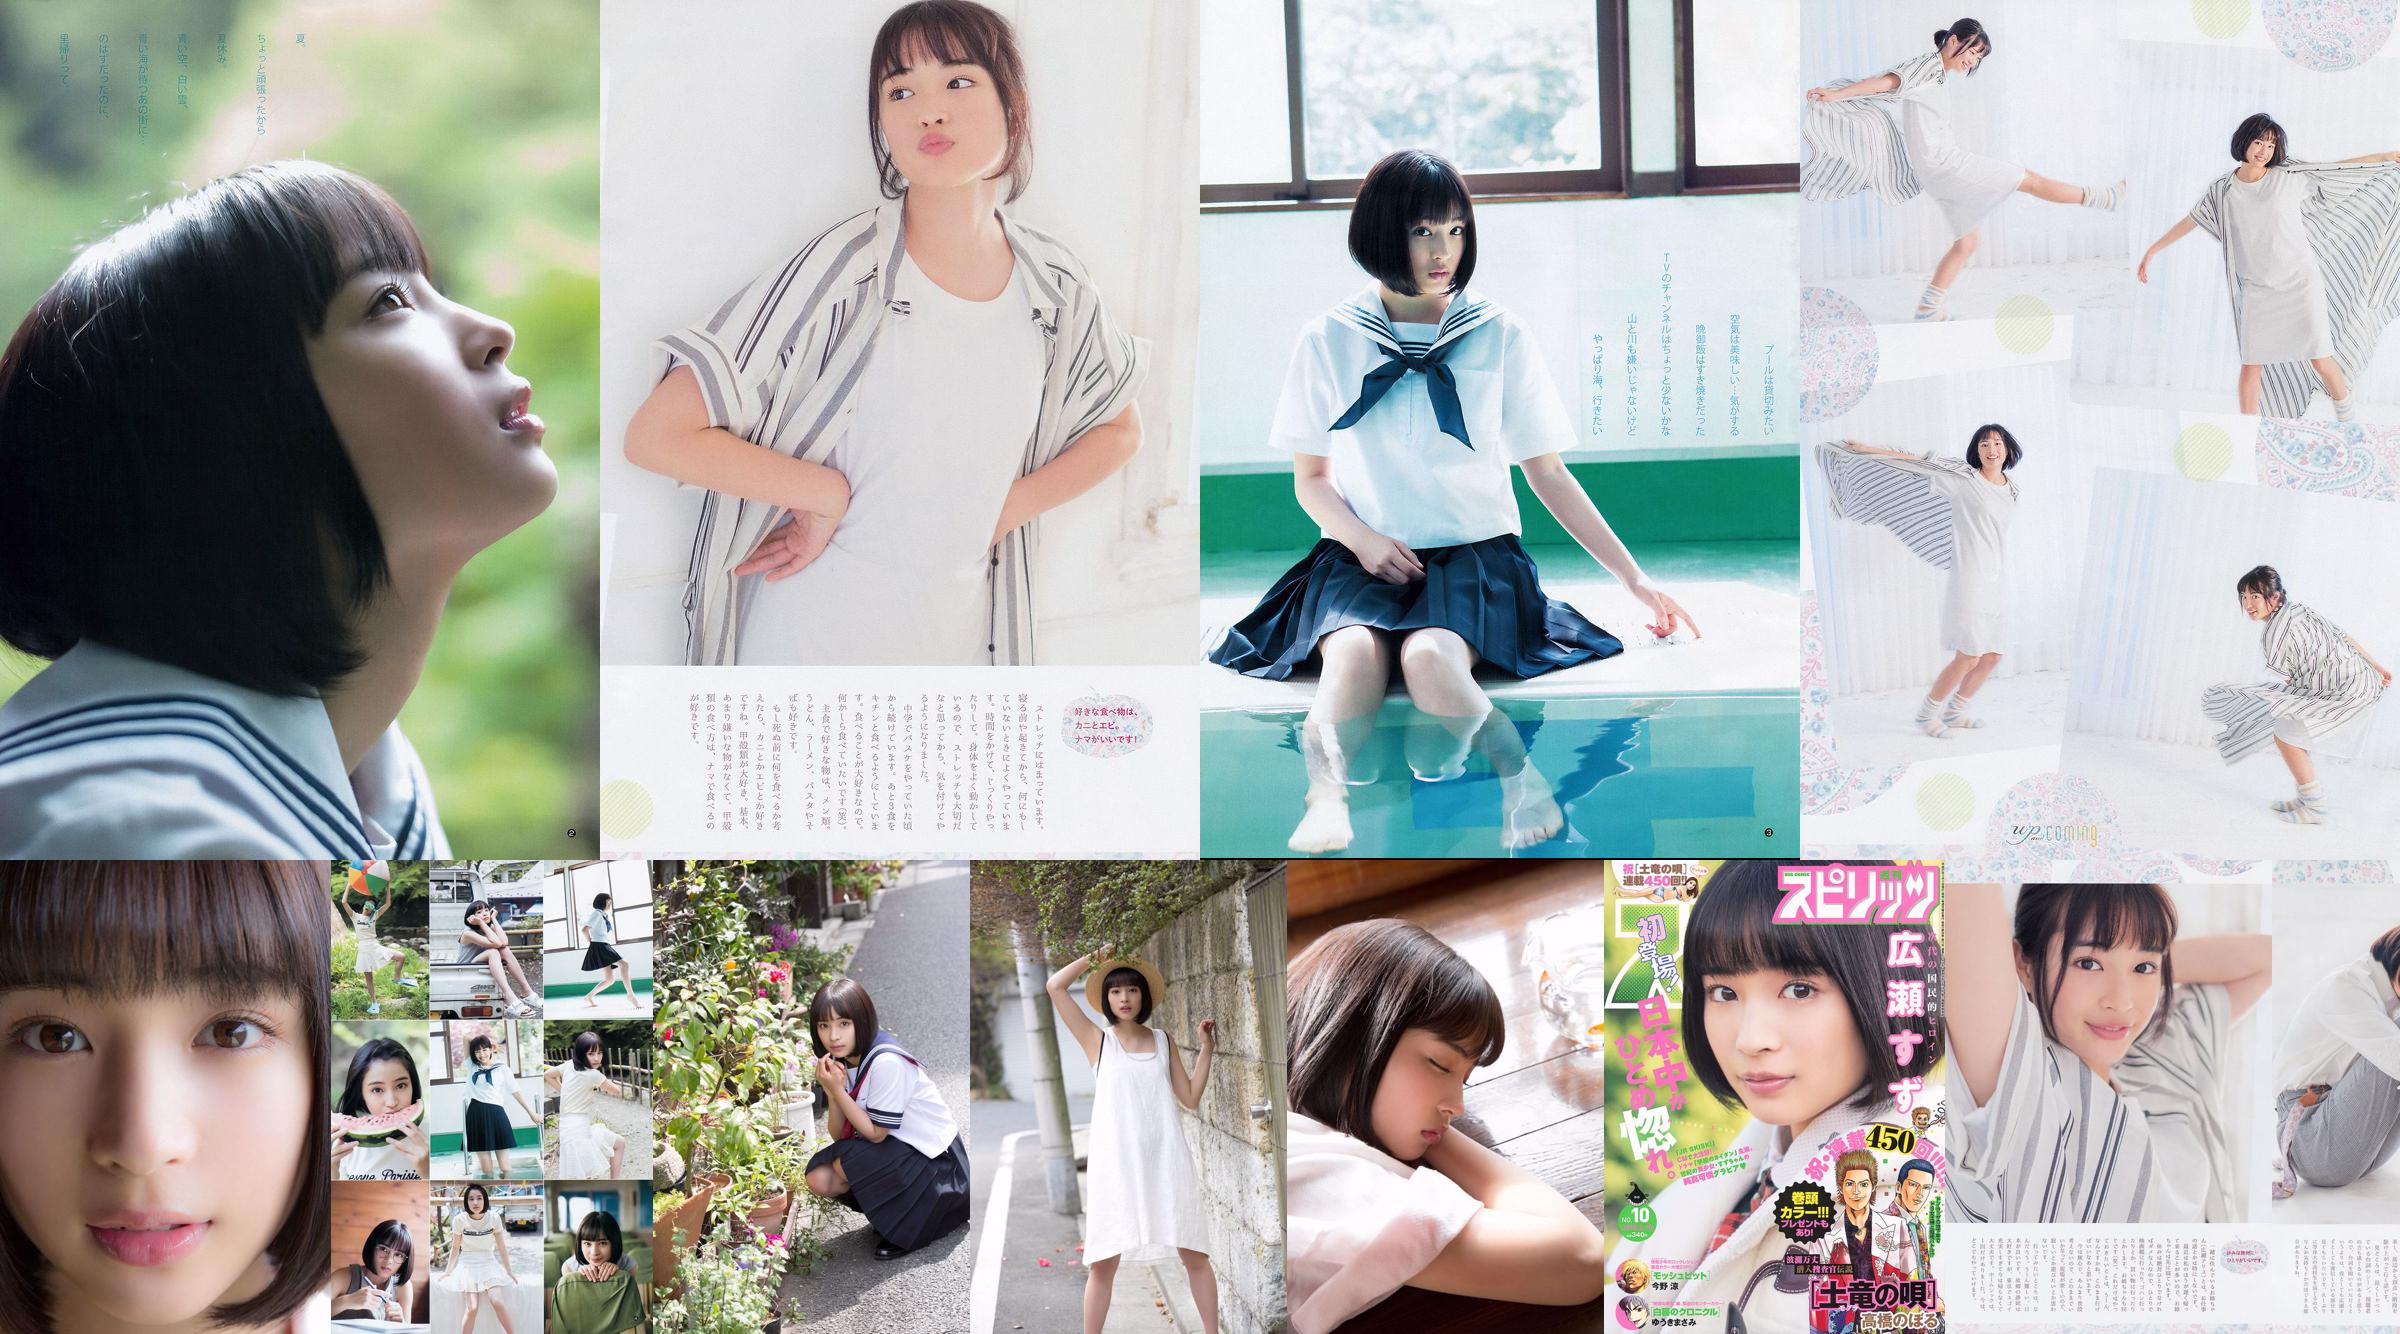 Suzu Hirose Sakura Miyawaki [Wöchentlicher Jungsprung] 2015 No.32 Photo Magazine No.820e6c Seite 5